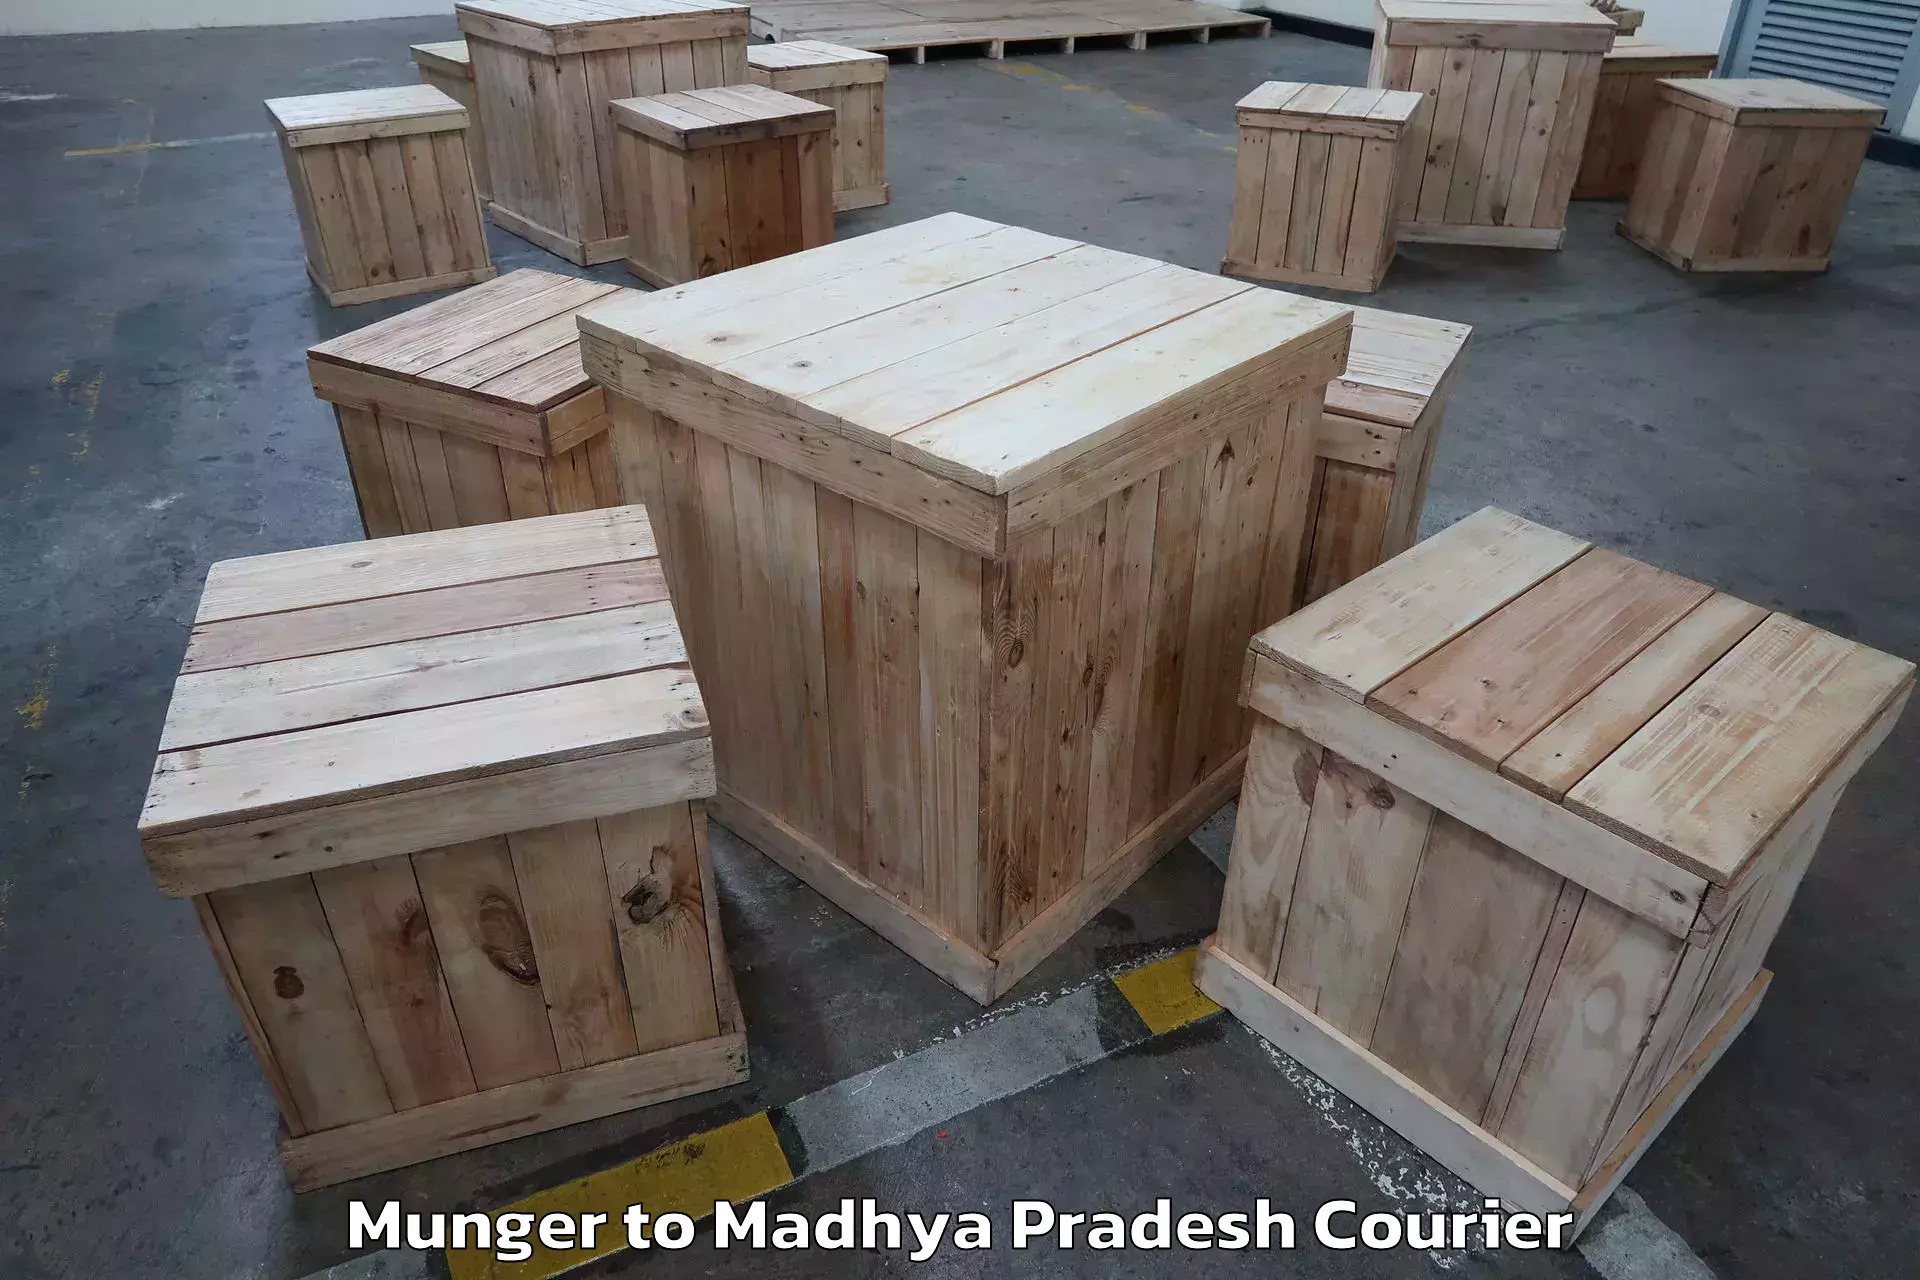 Furniture relocation experts Munger to Chitrangi